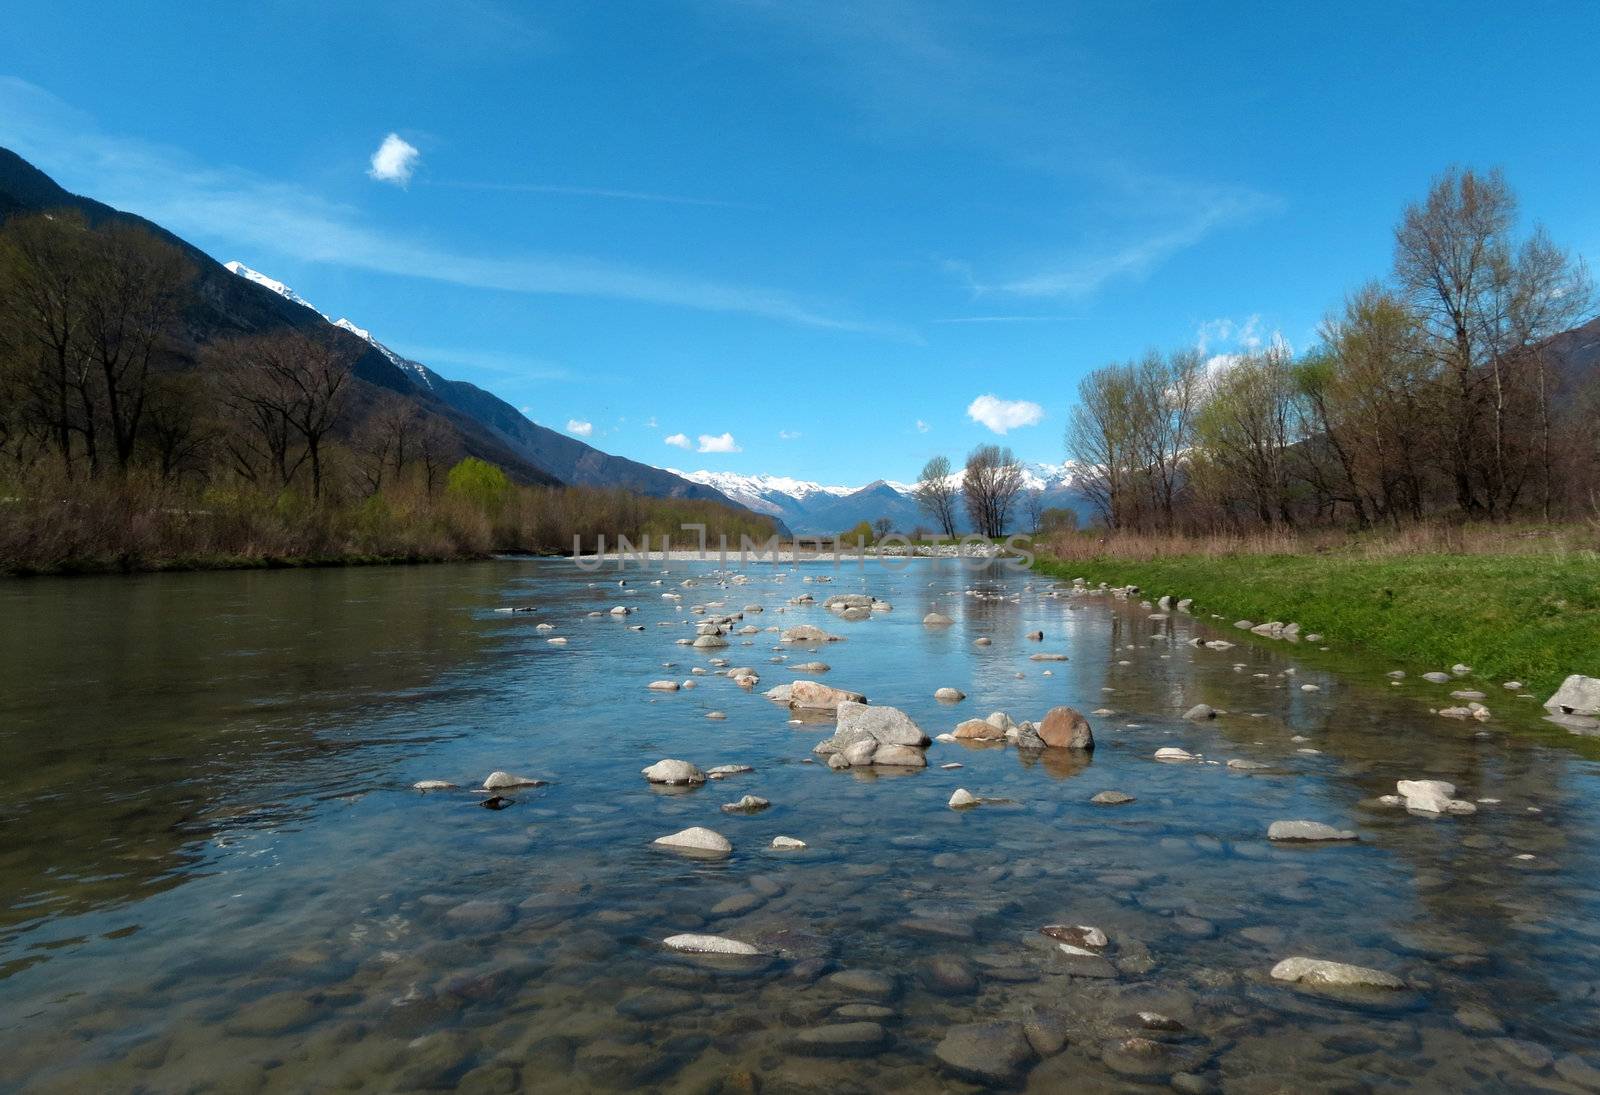 River Adda - northern Italy 